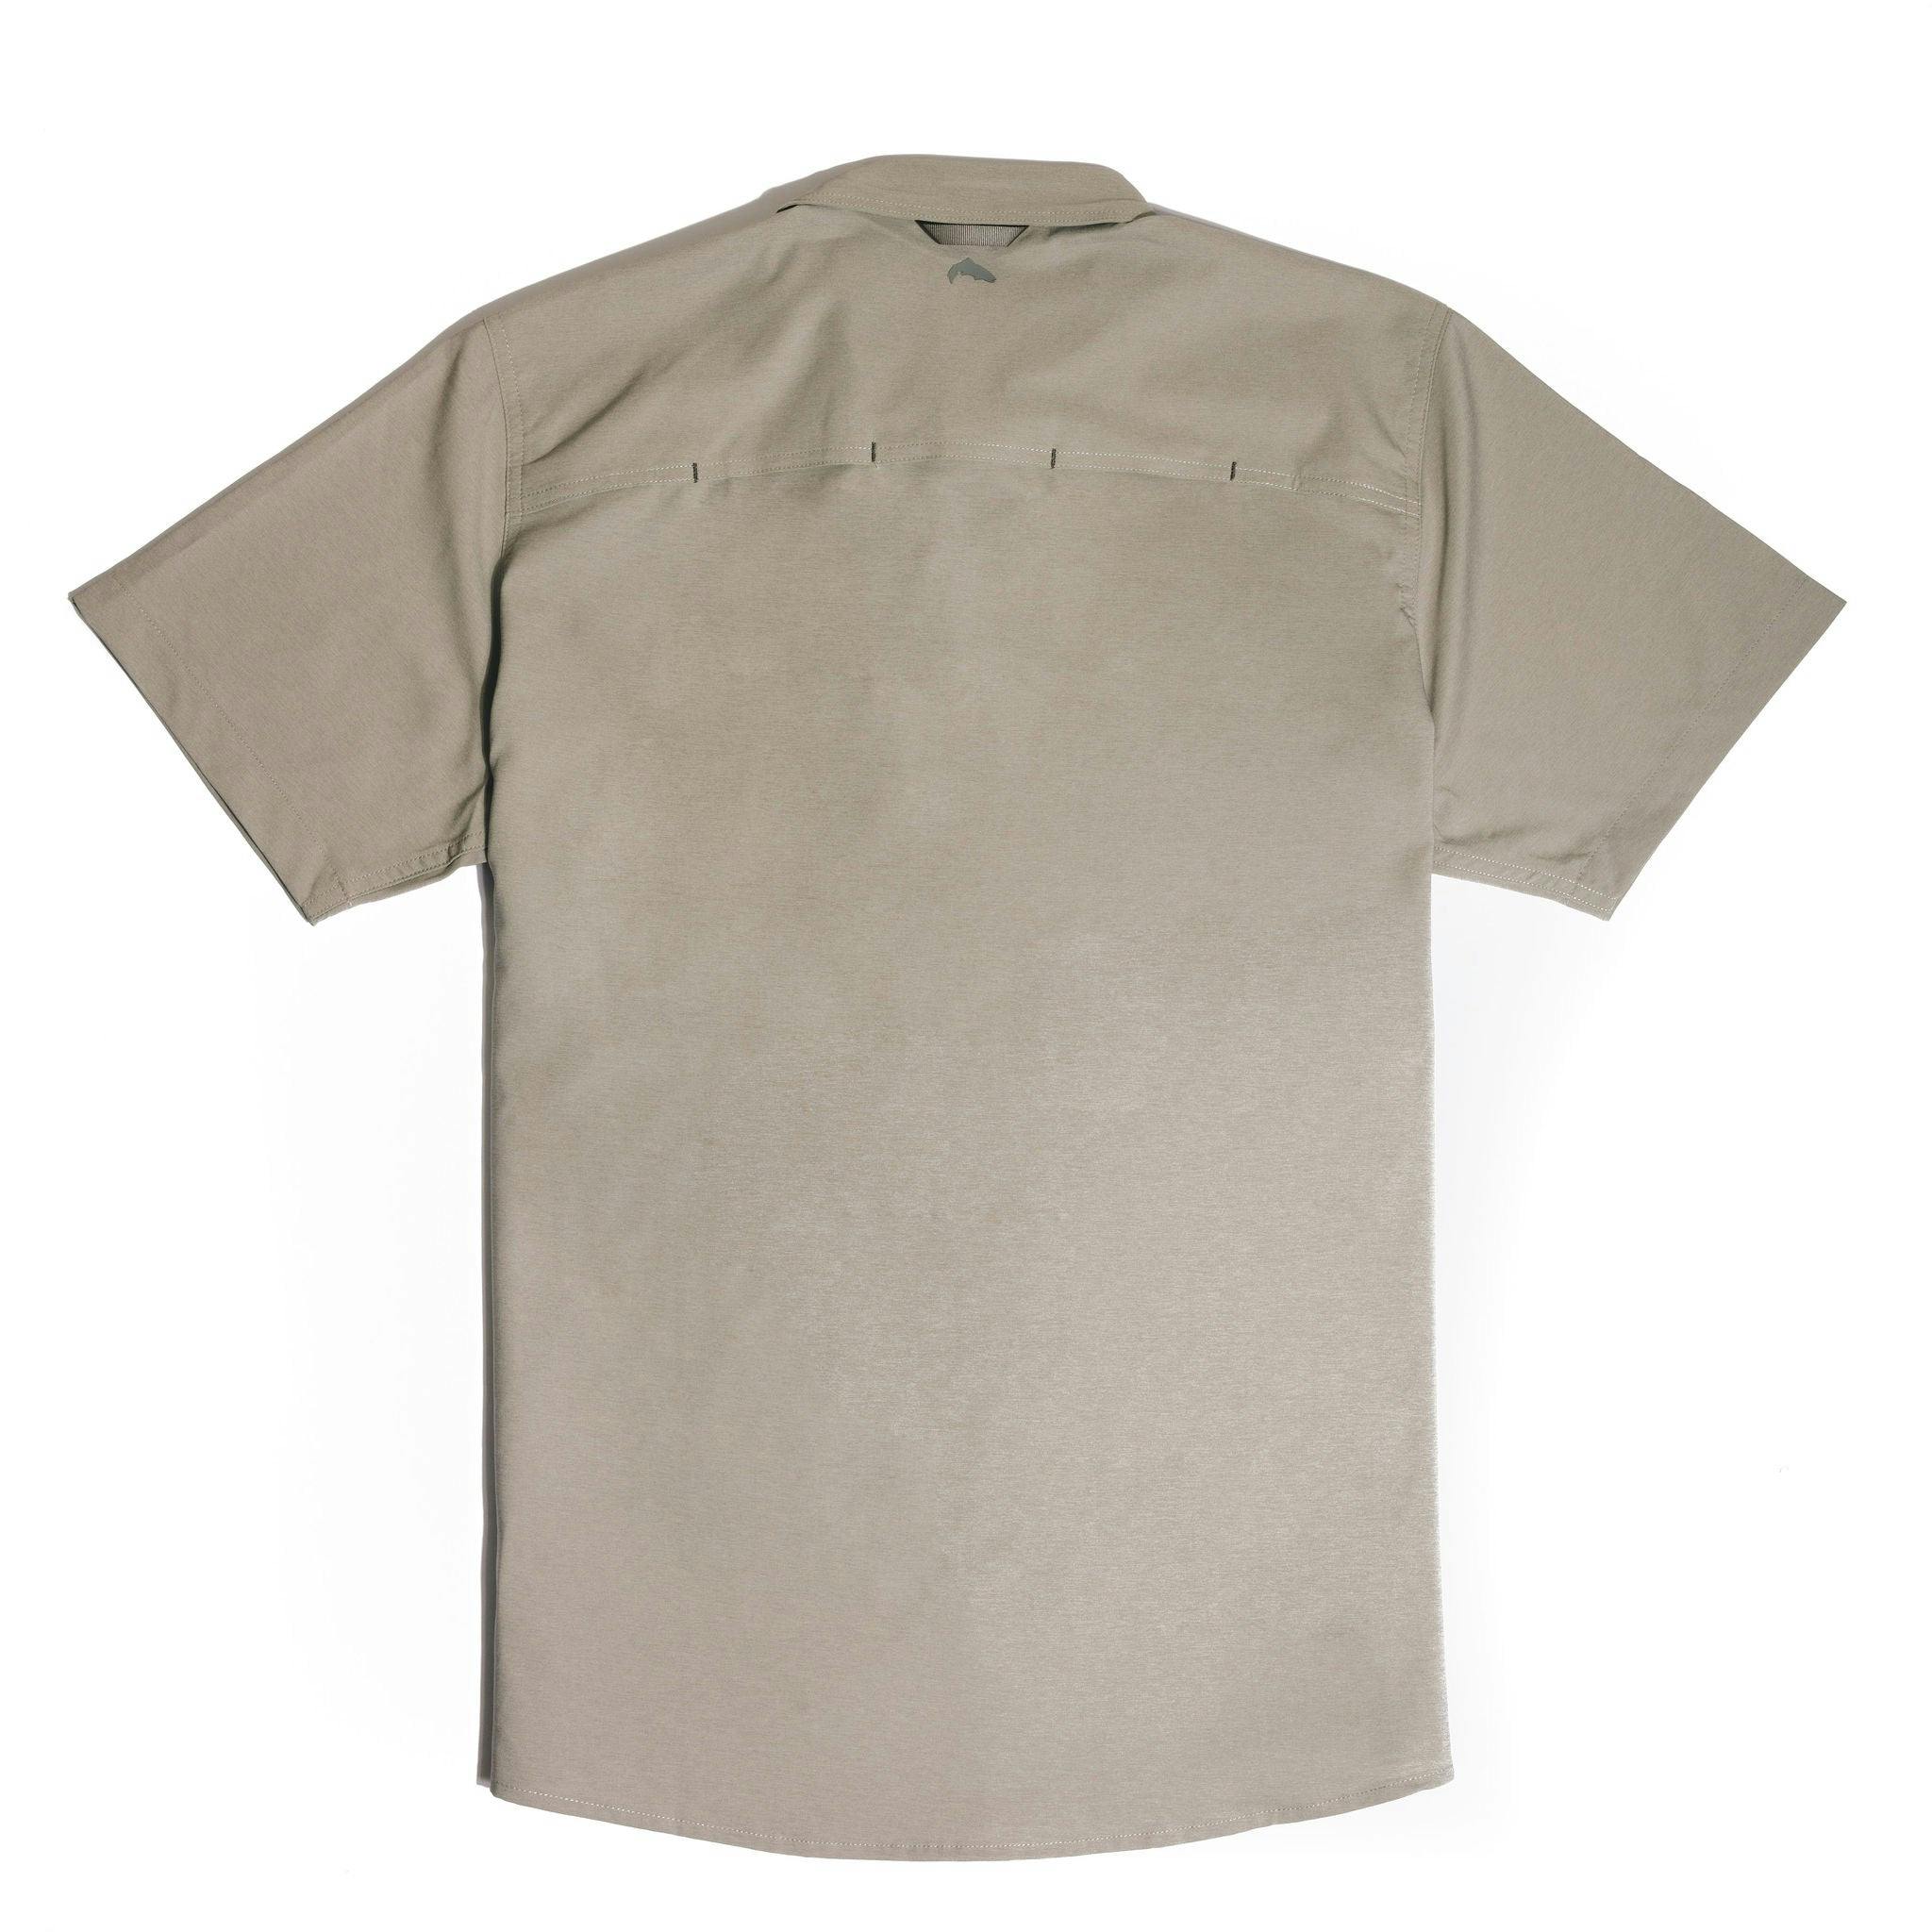 Sierra Nevada X Simms Challenger Short Sleeve Shirt | Sierra Nevada ...